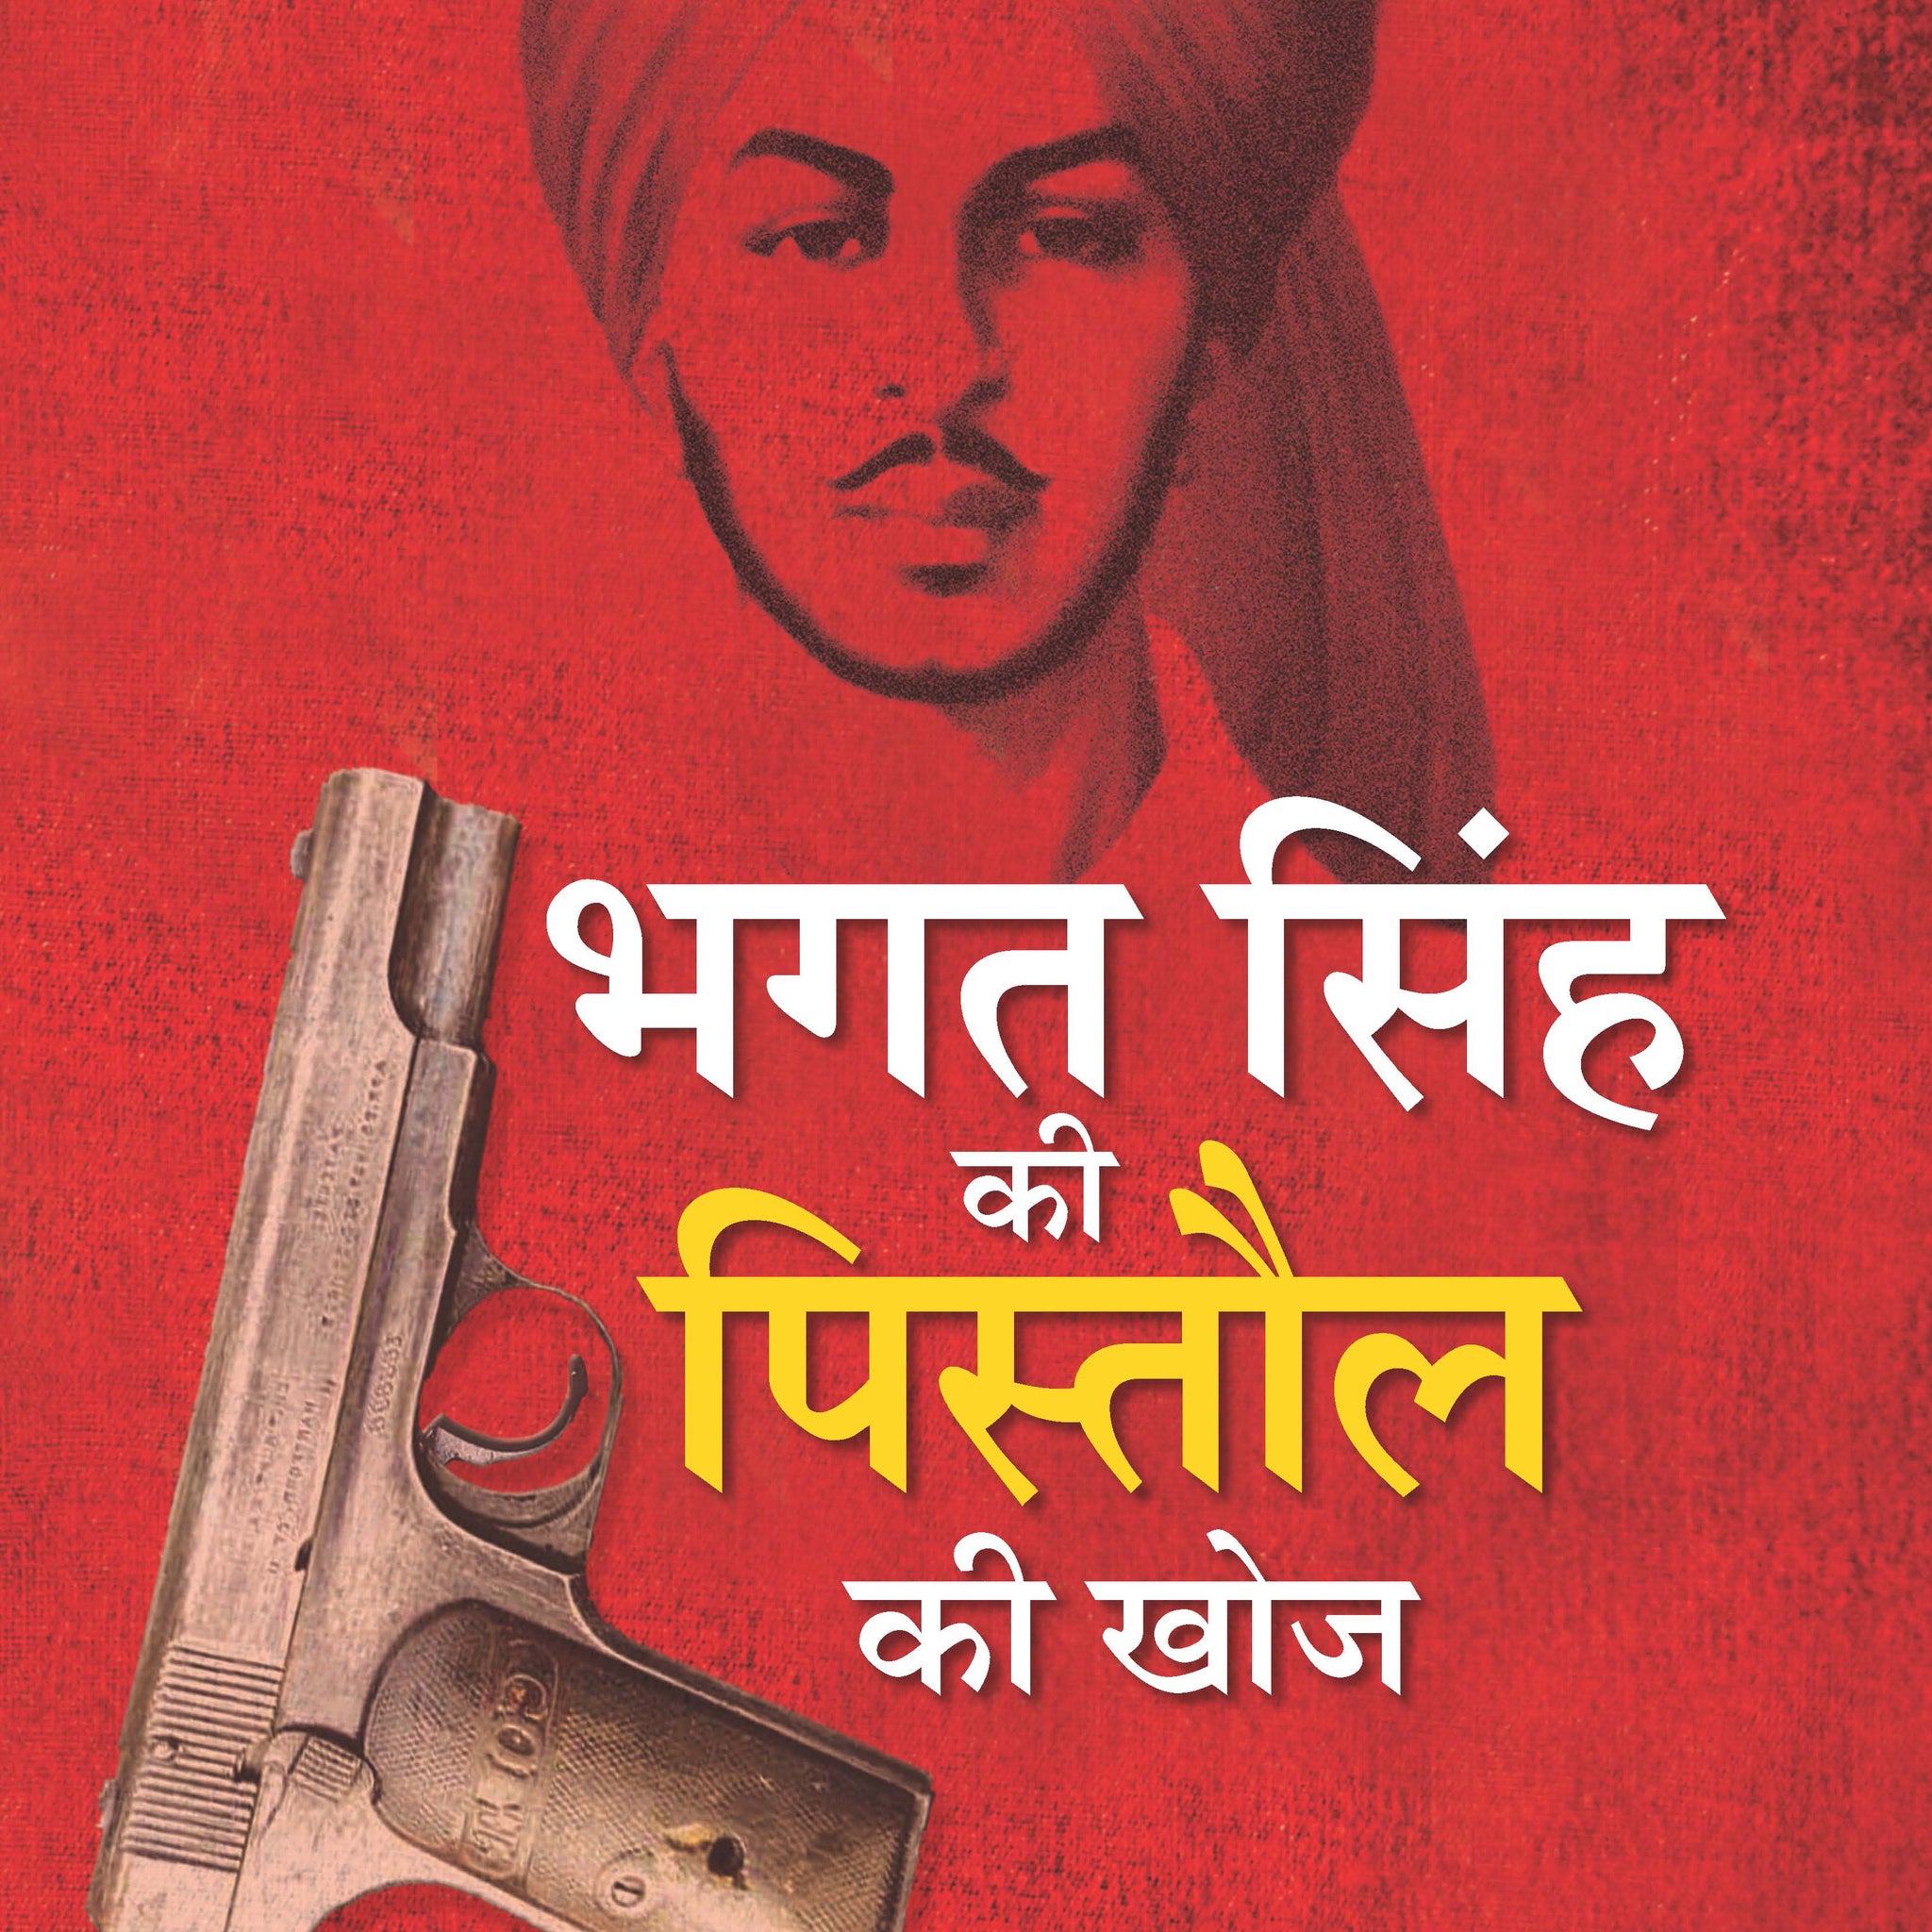 Bhagat Singh Ki Pistaul Ki Khoj